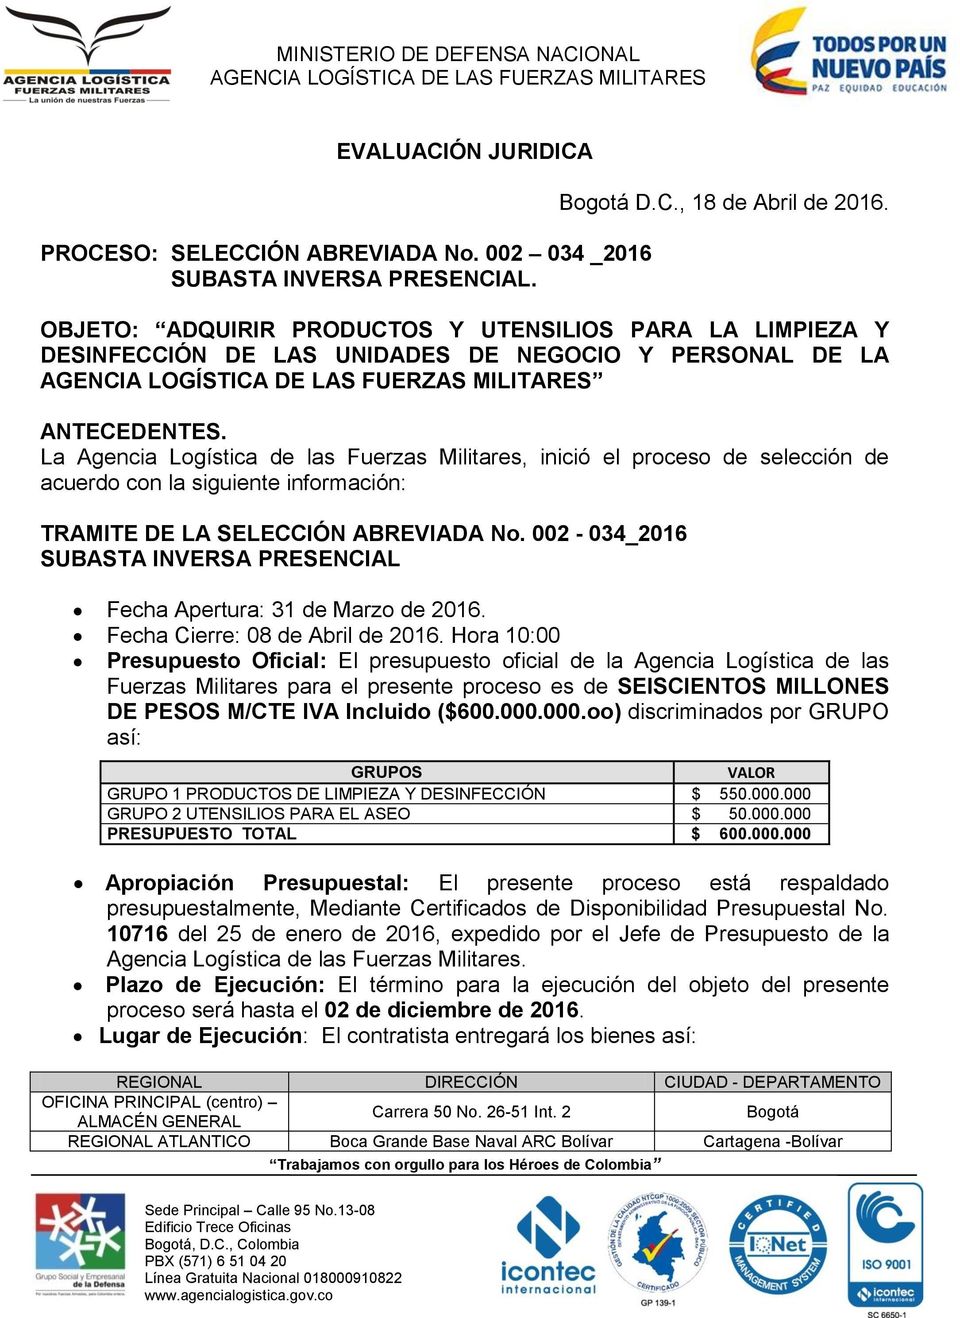 La Agencia Logística de las Fuerzas Militares, inició el proceso de selección de acuerdo con la siguiente información: TRAMITE DE LA SELECCIÓN ABREVIADA No.